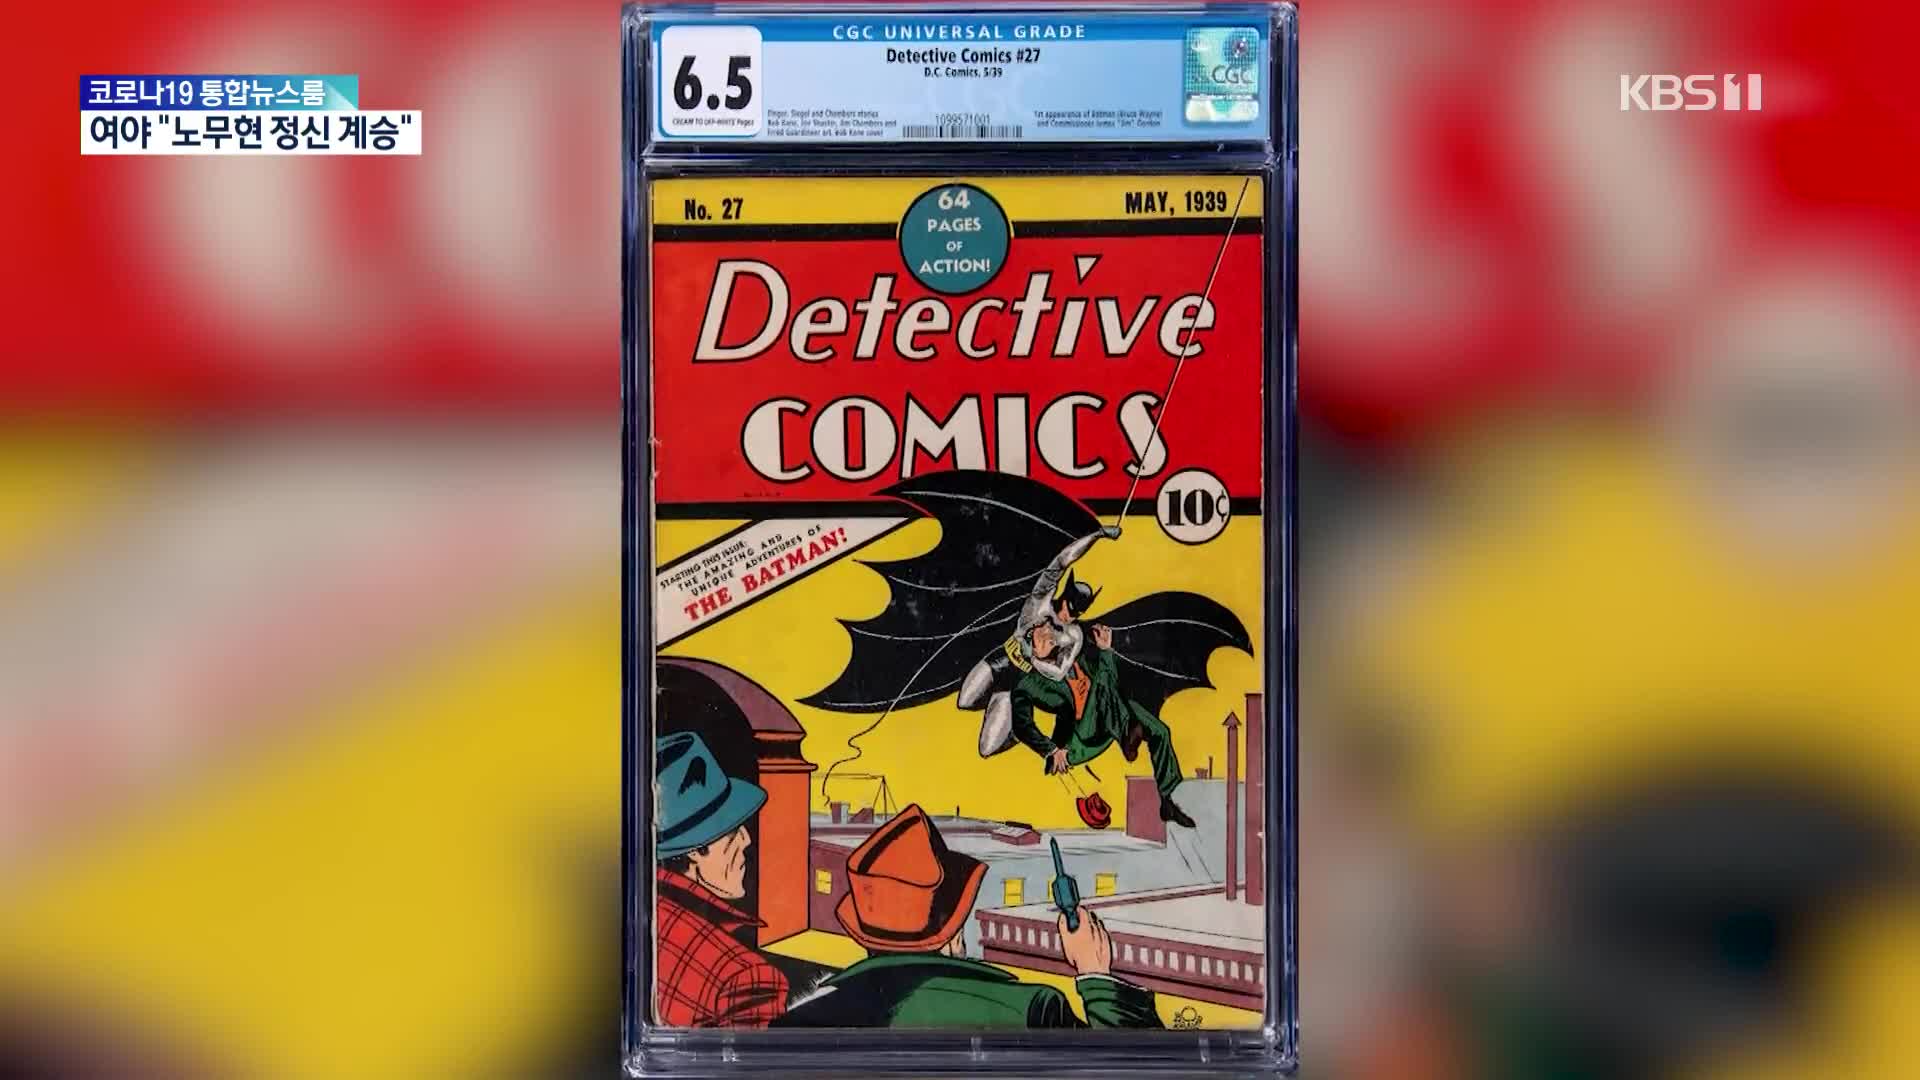 [문화광장] 배트맨 처음 등장한 1939년 만화책, 낙찰가 22억 원